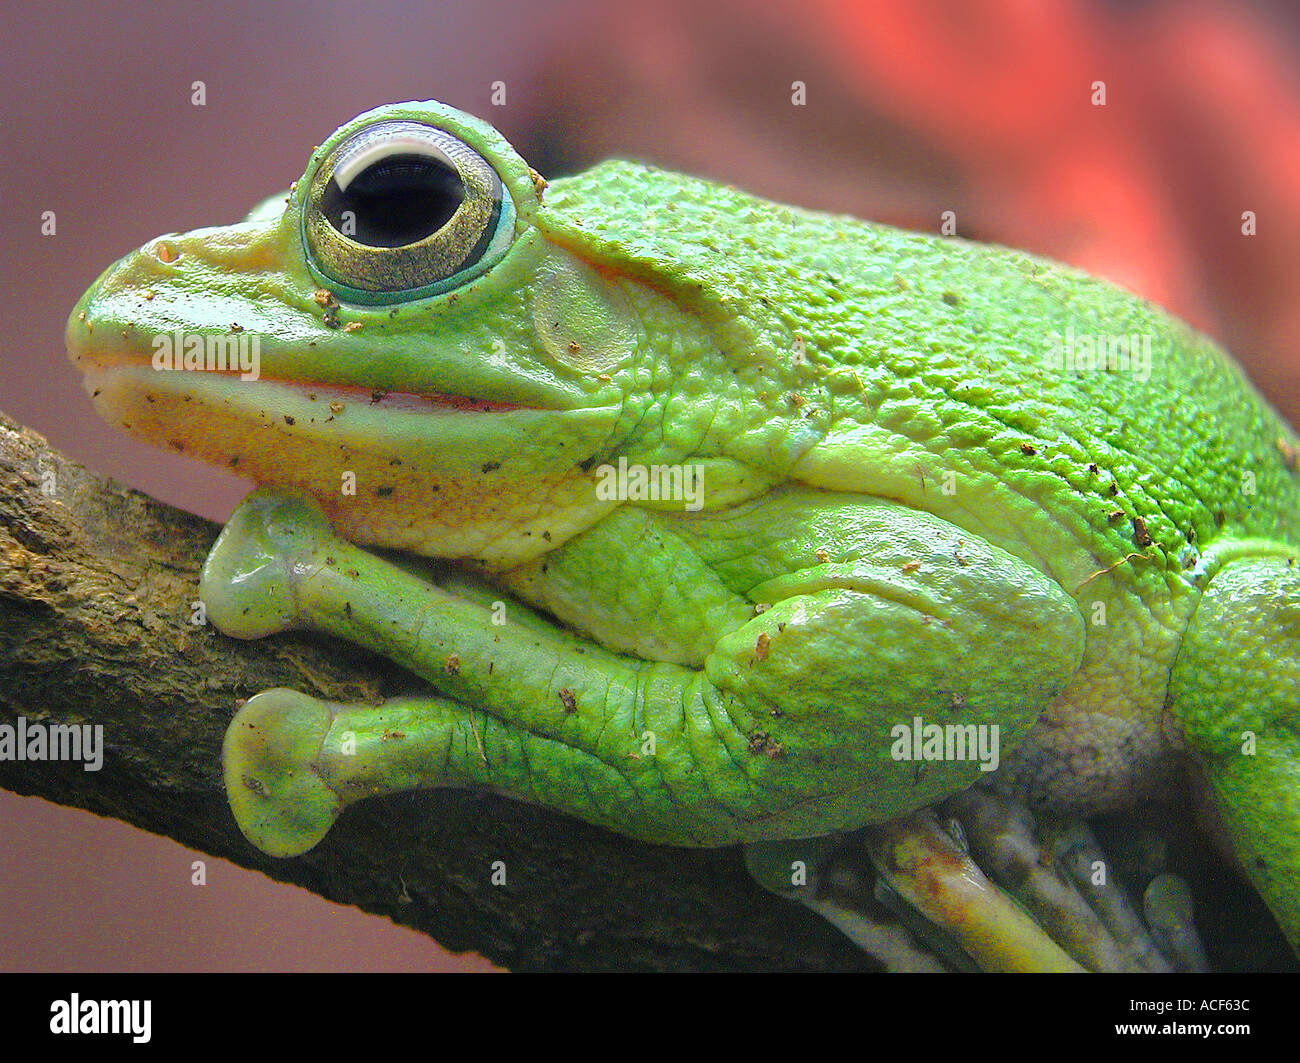 Helles Gelb grüner Frosch, ruhig auf einem Ast sitzend Stockfotografie -  Alamy